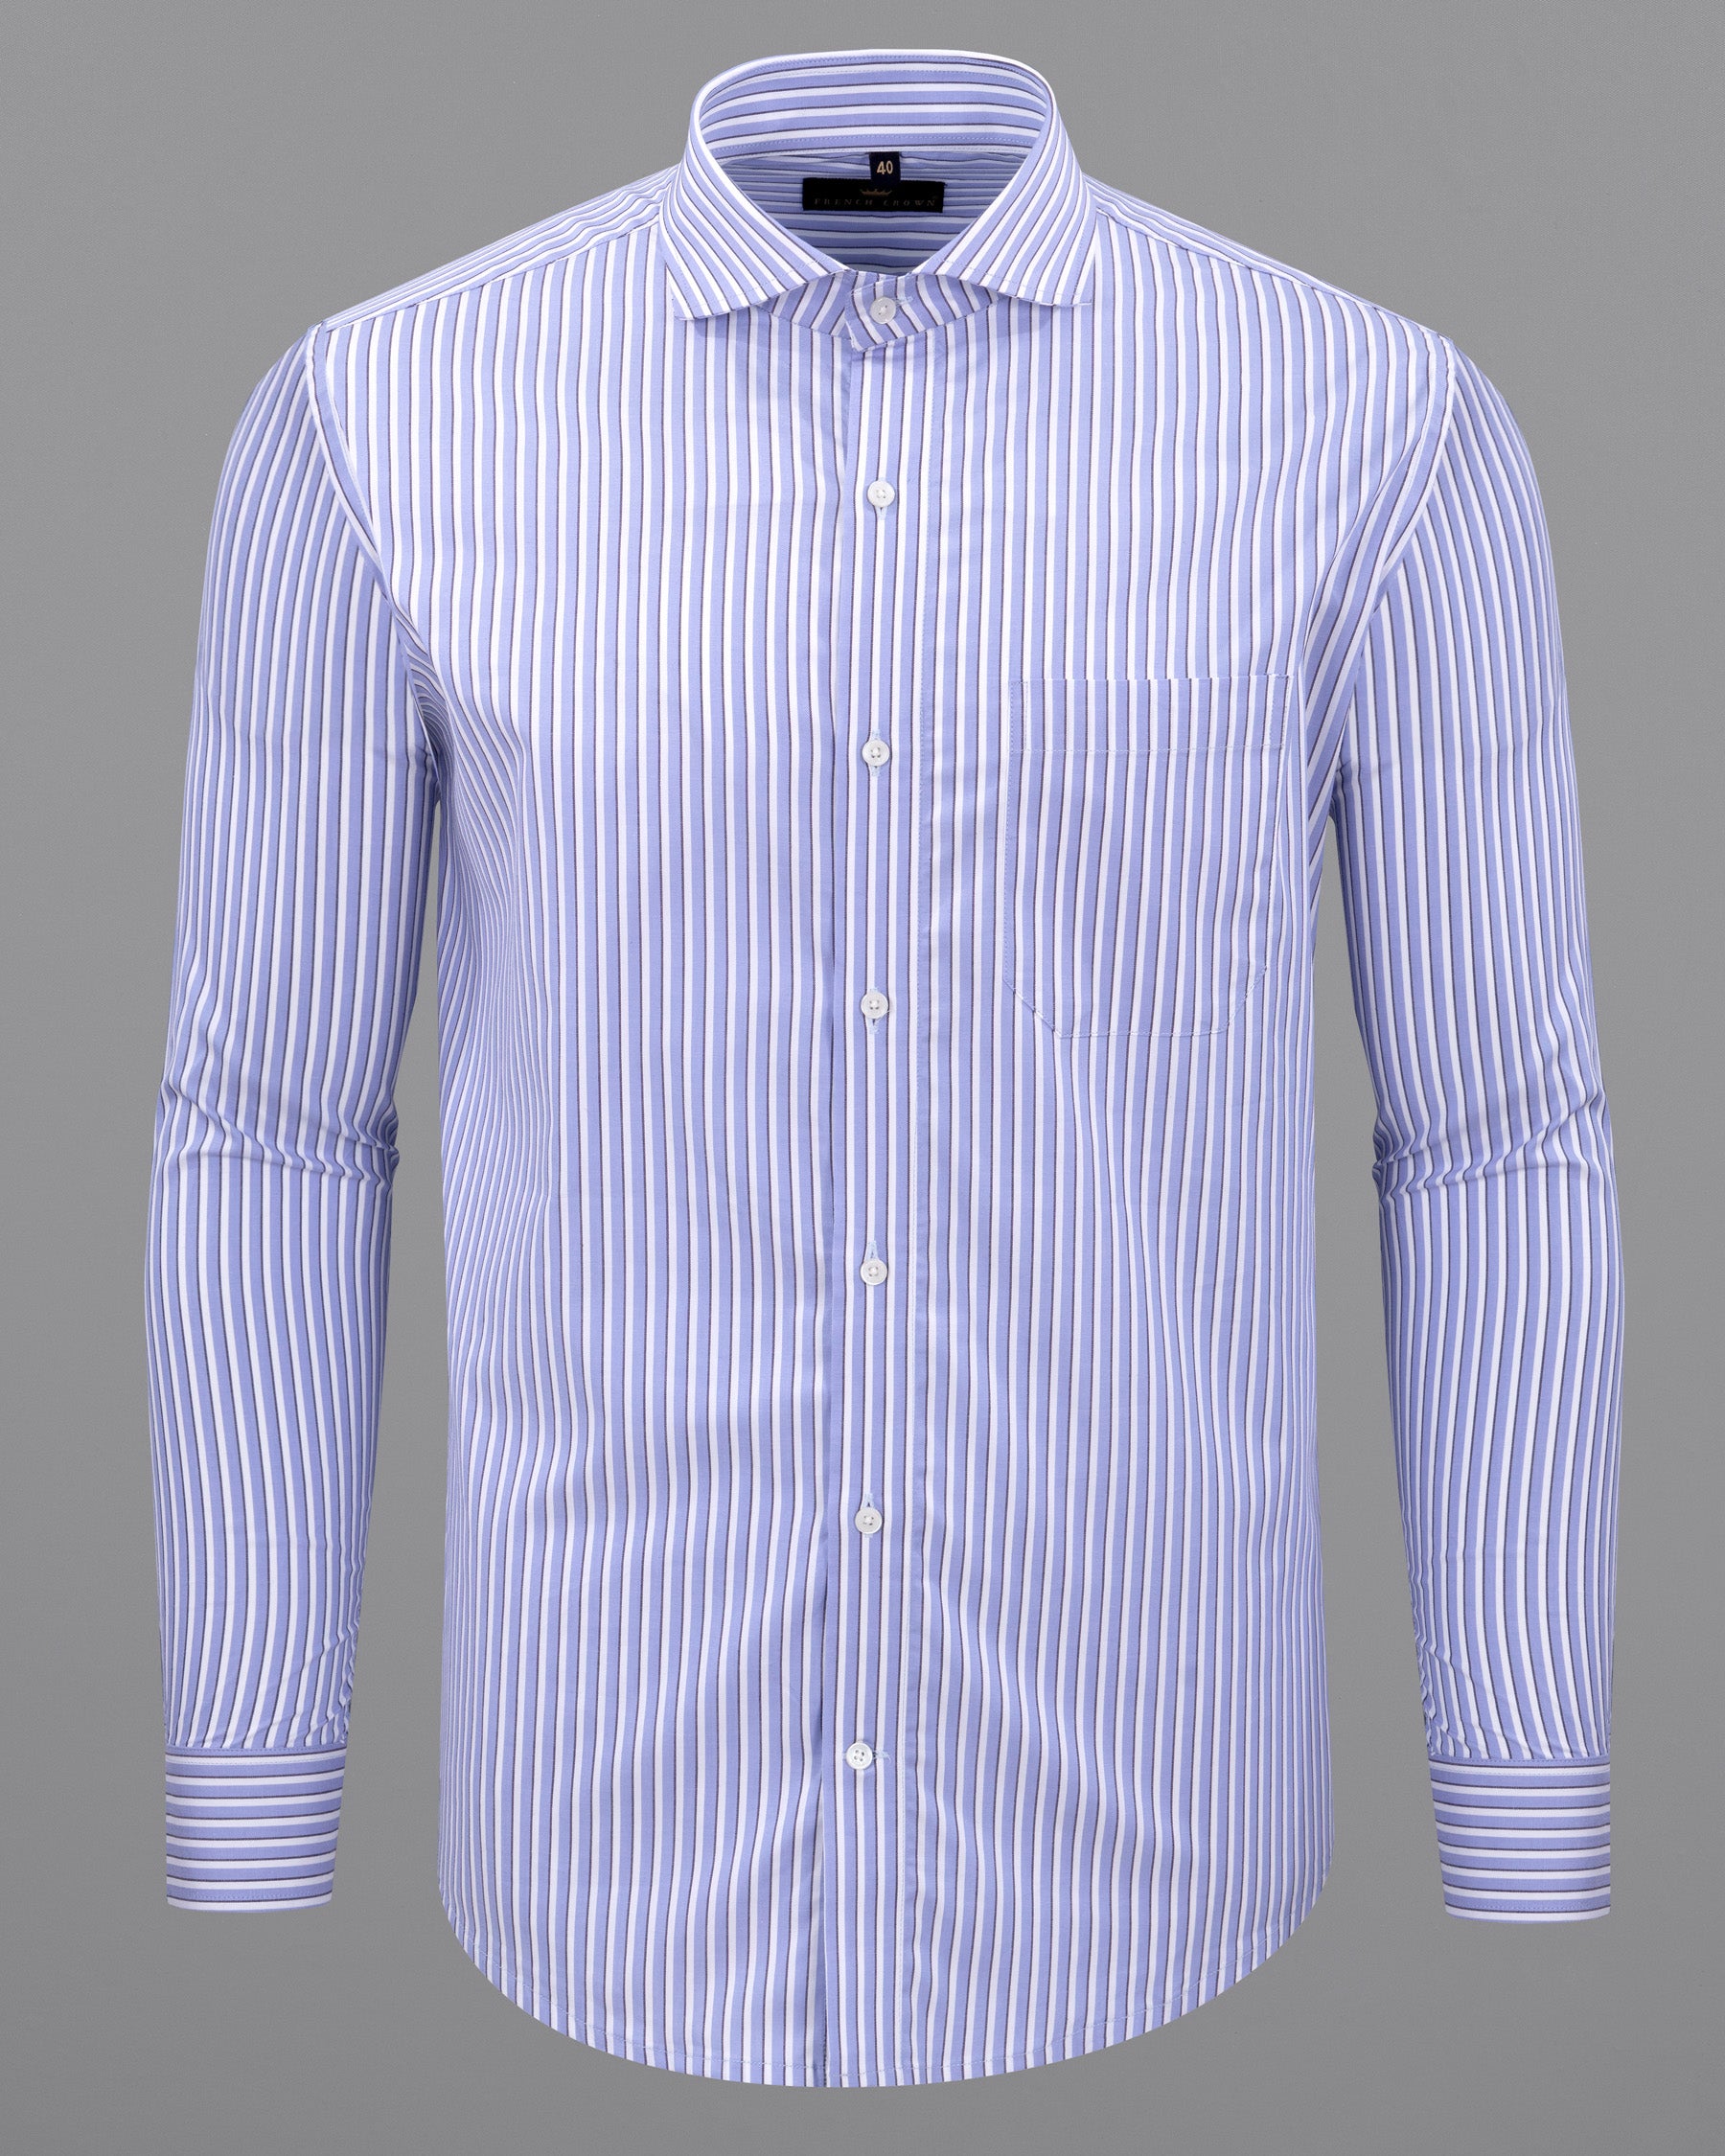 Sky Blue Striped Premium Cotton shirt 5508-CA-38, 5508-CA-H-38, 5508-CA-39, 5508-CA-H-39, 5508-CA-40, 5508-CA-H-40, 5508-CA-42, 5508-CA-H-42, 5508-CA-44, 5508-CA-H-44, 5508-CA-46, 5508-CA-H-46, 5508-CA-48, 5508-CA-H-48, 5508-CA-50, 5508-CA-H-50, 5508-CA-52, 5508-CA-H-52